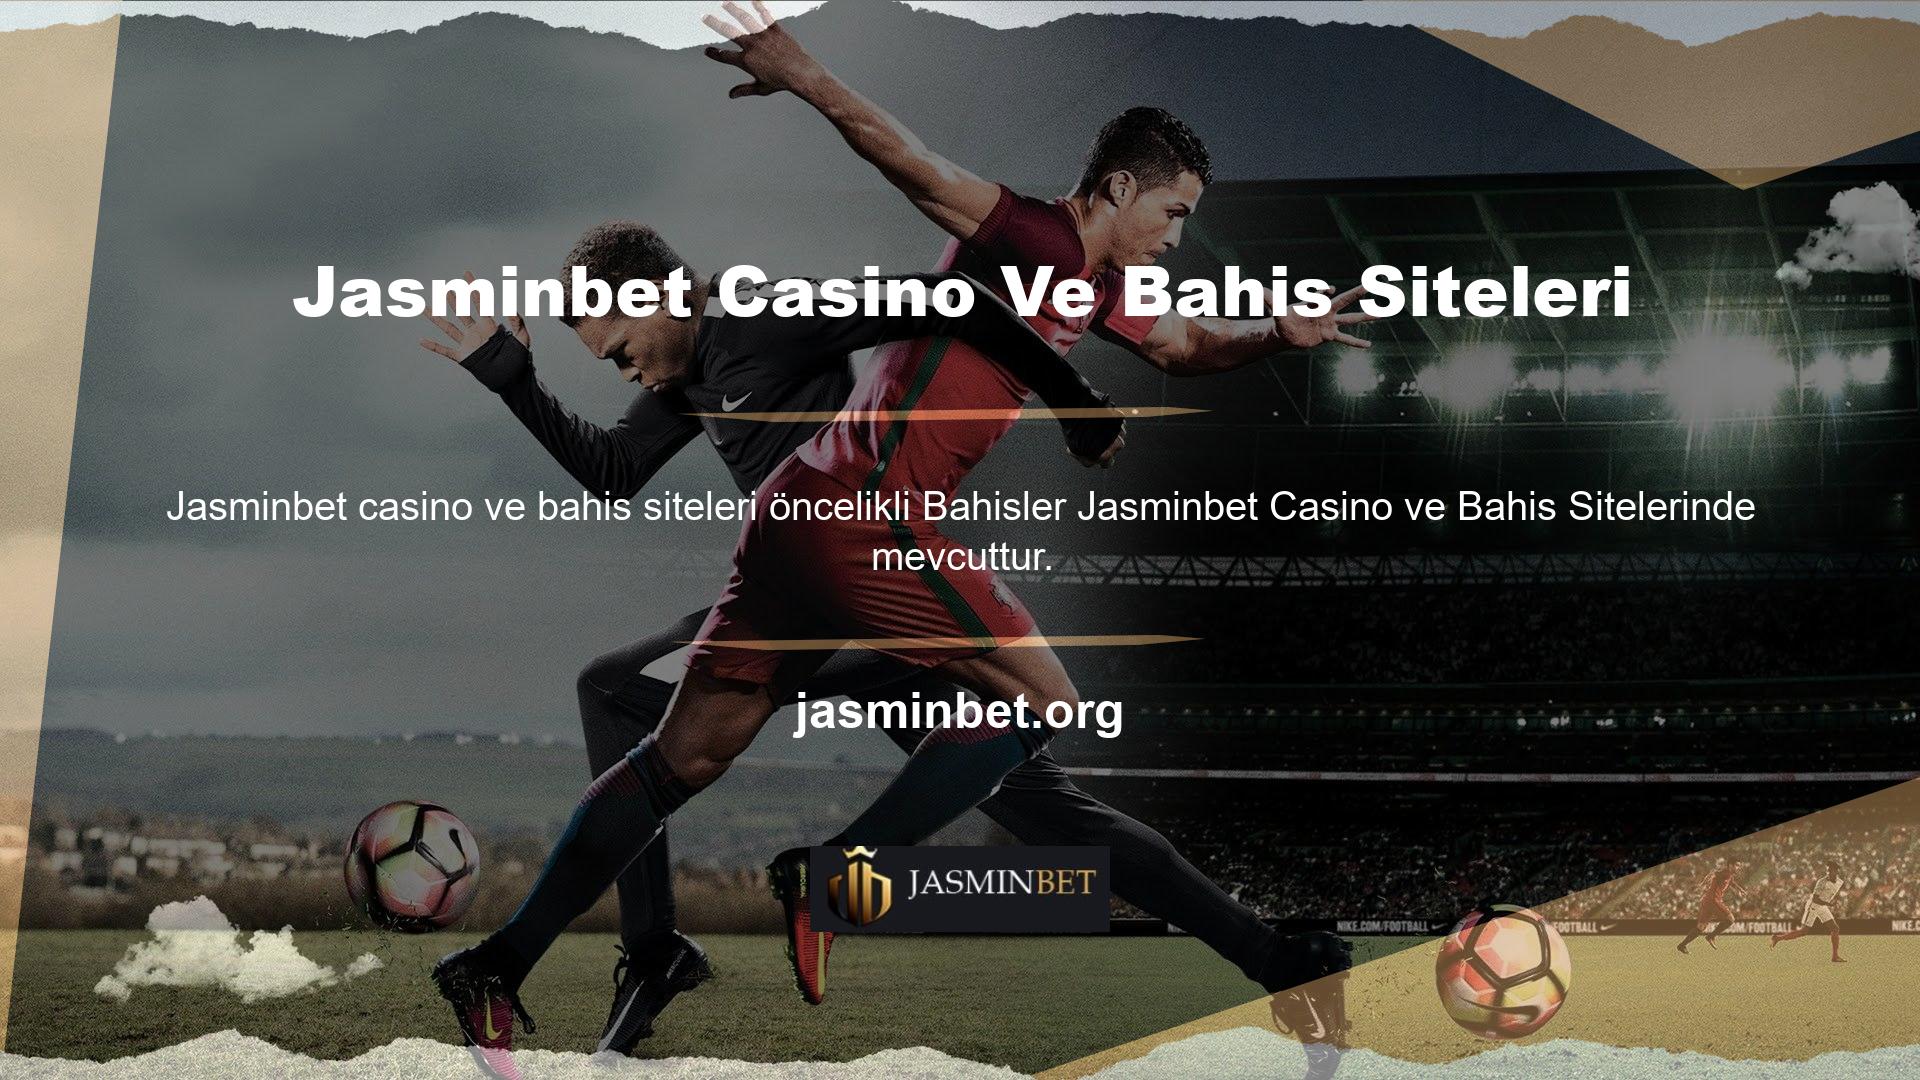 Jasminbet Casino ve Bahis Sitesinde eğlenceli casino oyunları ile bahis yapmak ve kazanmak çok kolay